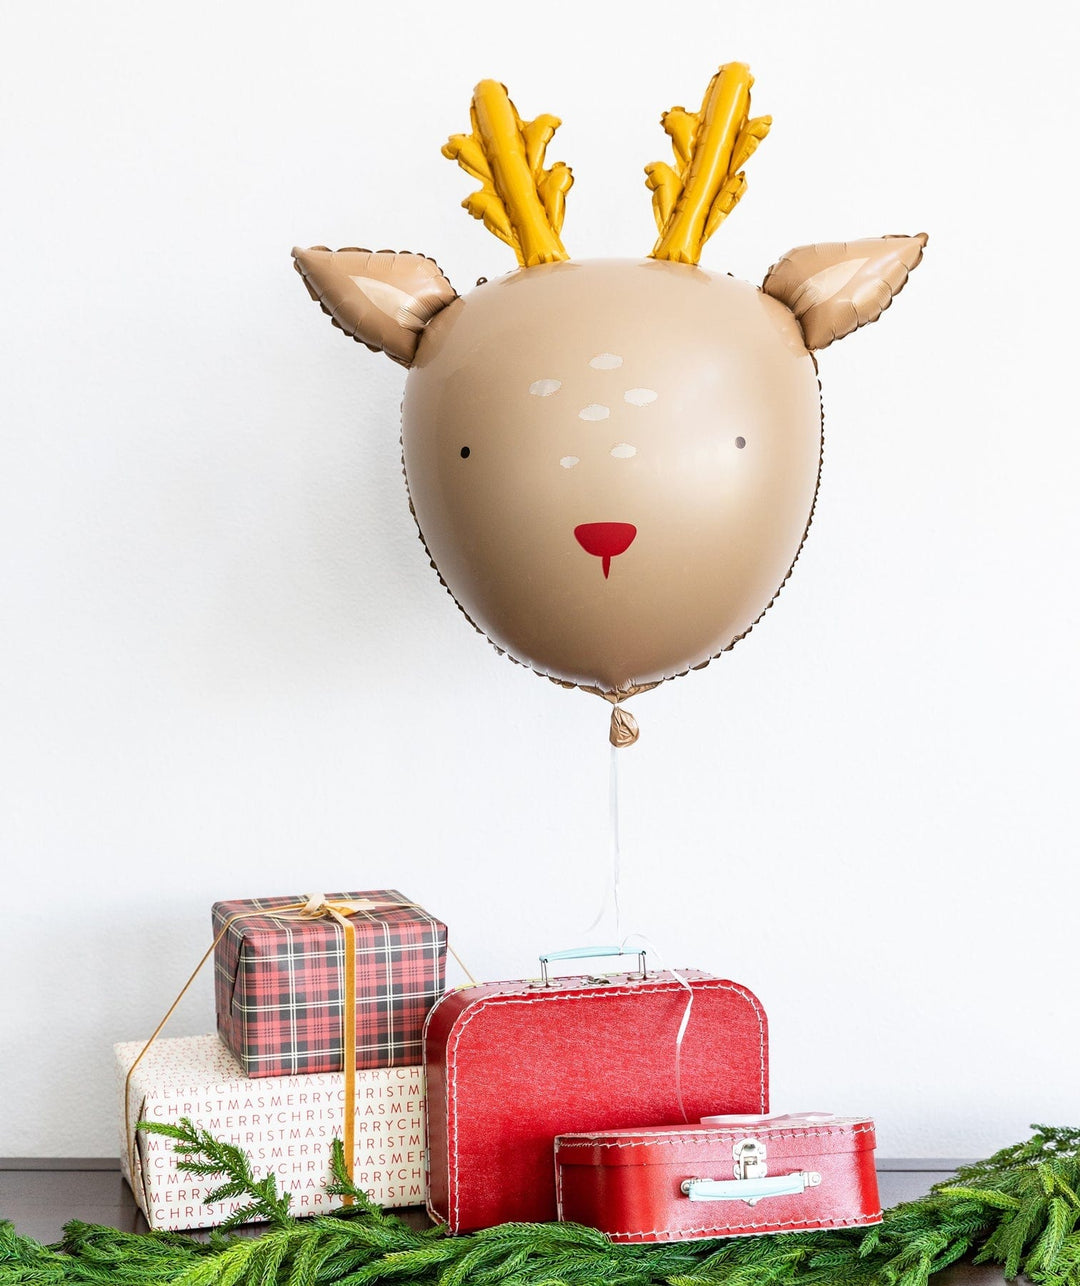 My Mind's Eye Christmas - Dear Rudolph Reindeer Foil Balloon Balloons Dear Rudolph Reindeer Foil Balloon